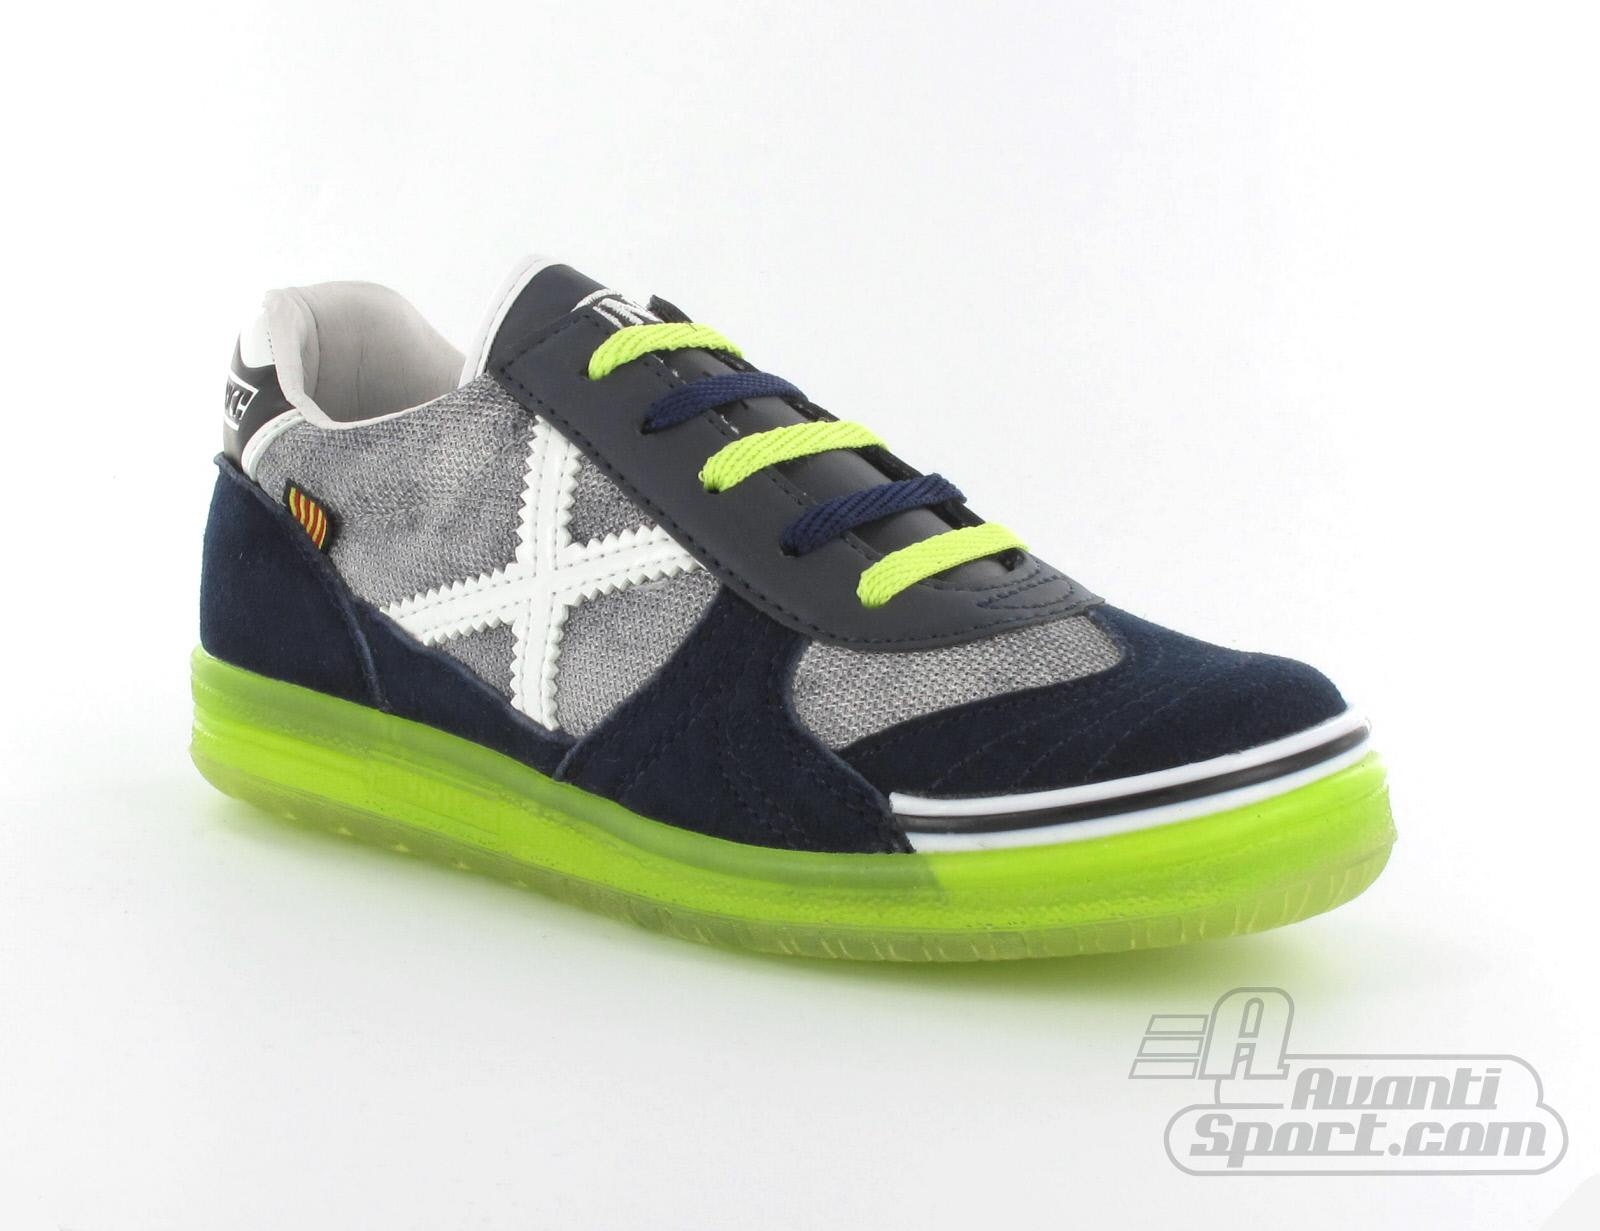 Avantisport - Munich - G 3 Kids - Sneaker